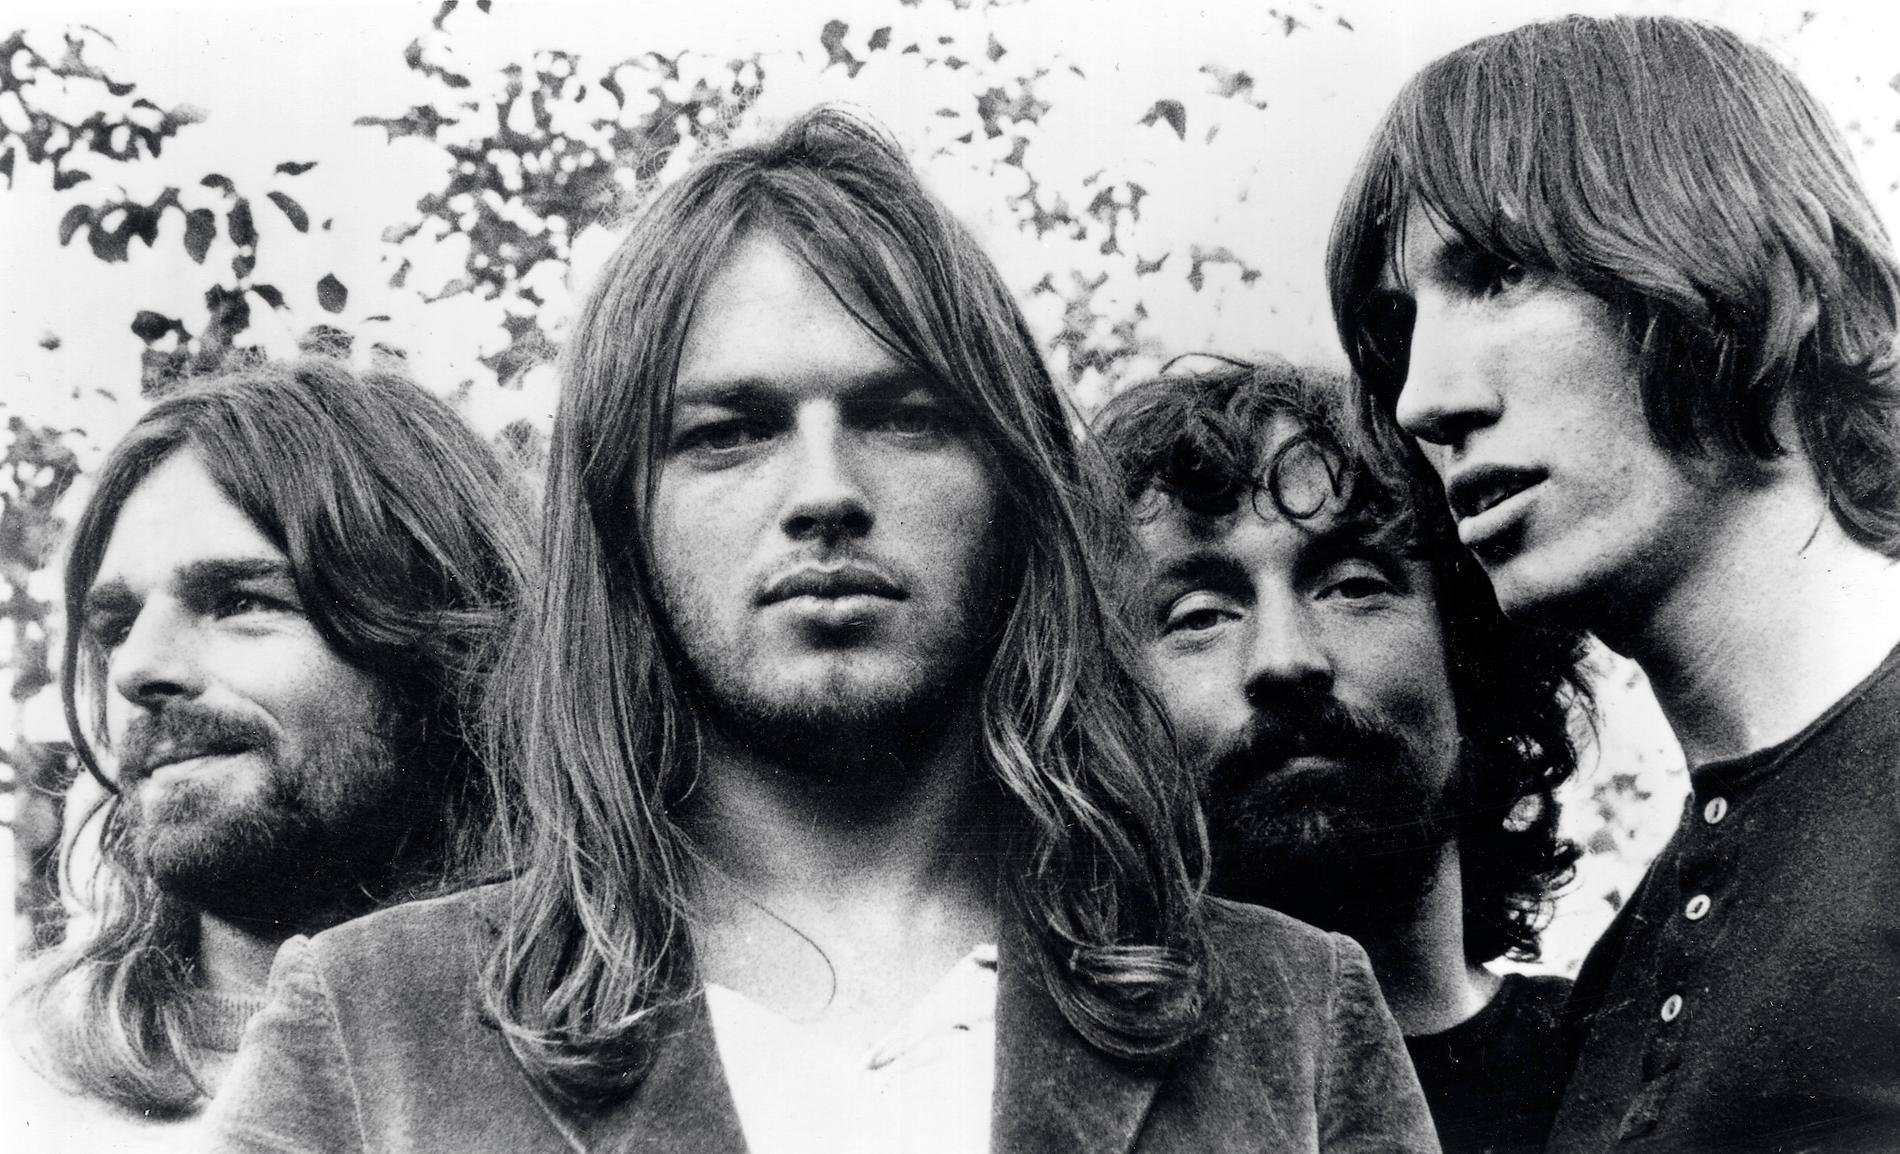 Pink Floyd när de släppte albumet ”The dark side of the moon” för 50 år sedan, 1973. Skivan firas naturligtvis med ännu en lyxig box som kostar mer än ett paket Bregott. 